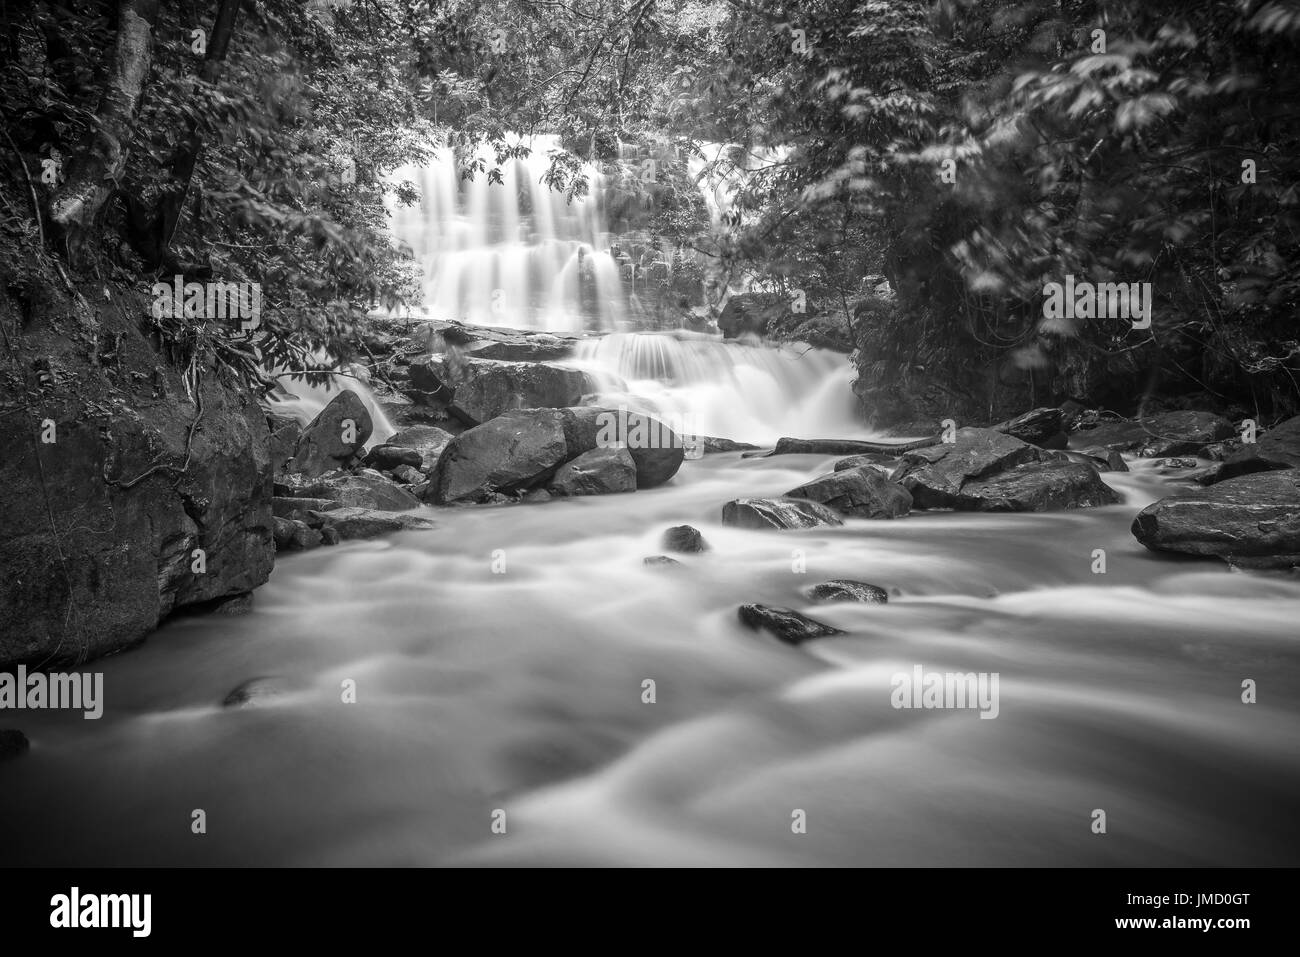 Photographie en noir et blanc d'une cascade de la forêt tropicale et de paysages de la rivière pris dans les parcs nationaux du Sarawak, Malaisie Banque D'Images